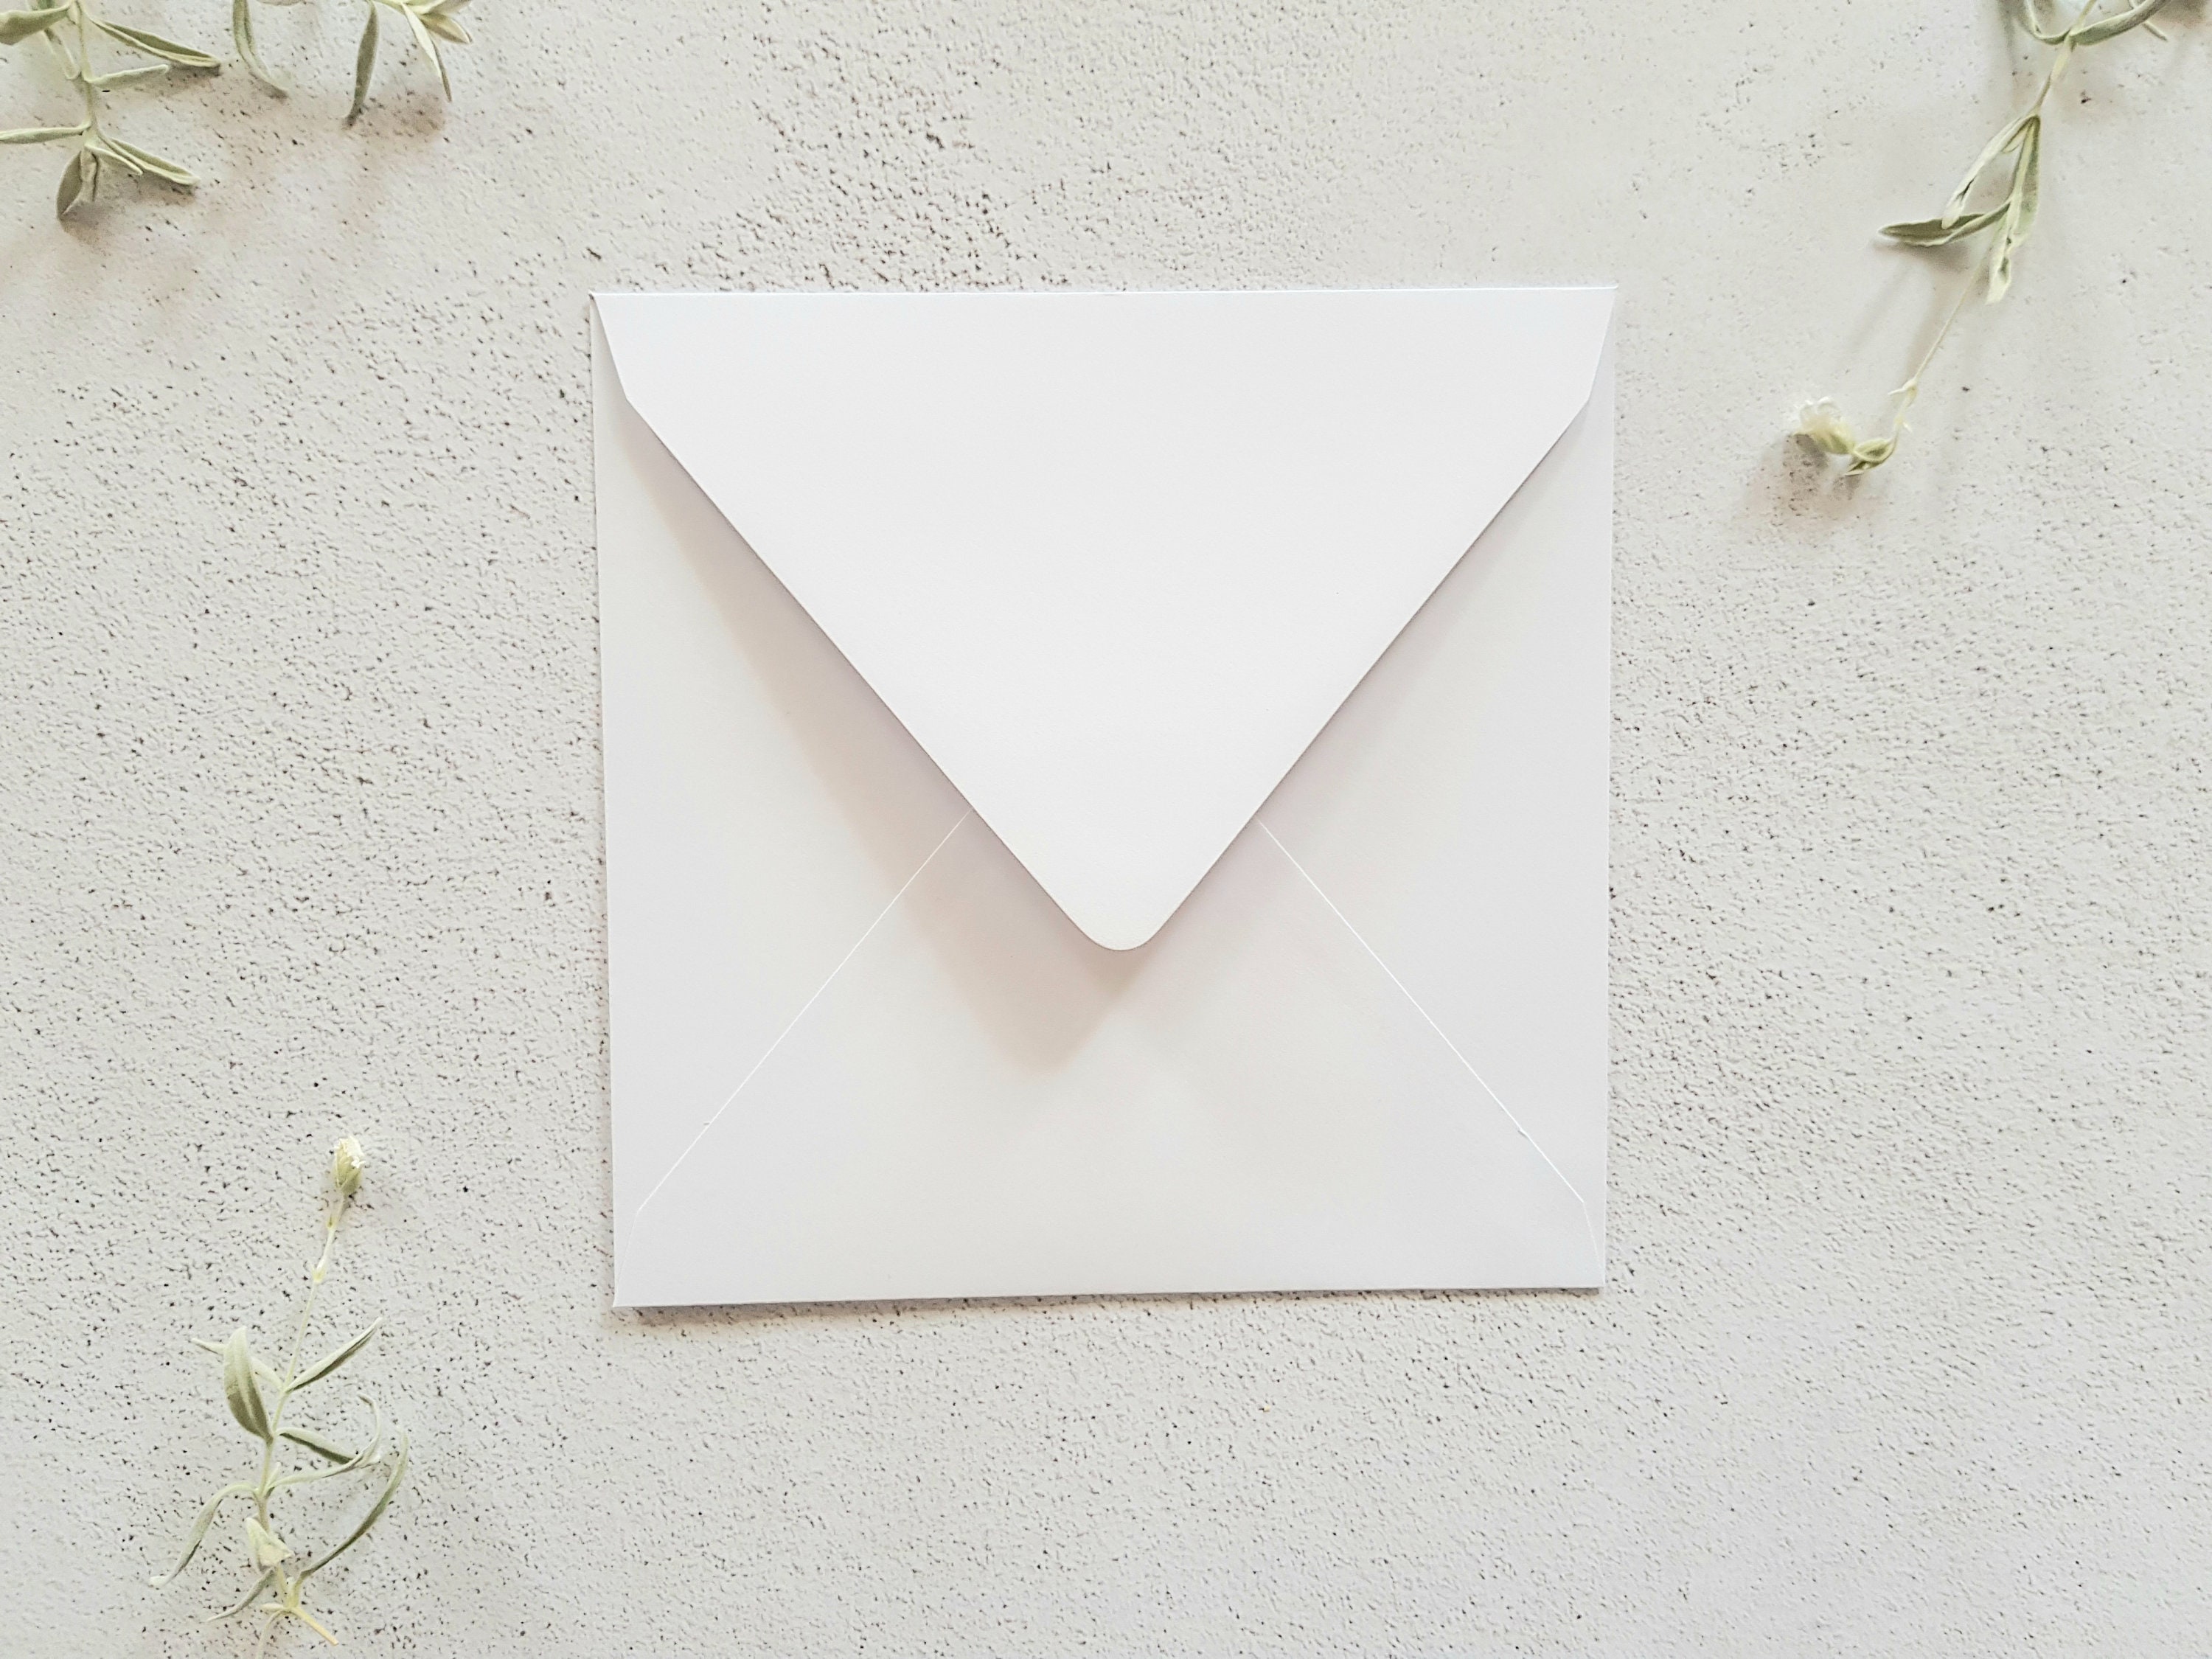 Lot de 50 enveloppes carrées - 15 x 15 cm - Blanc – 100 g/m²